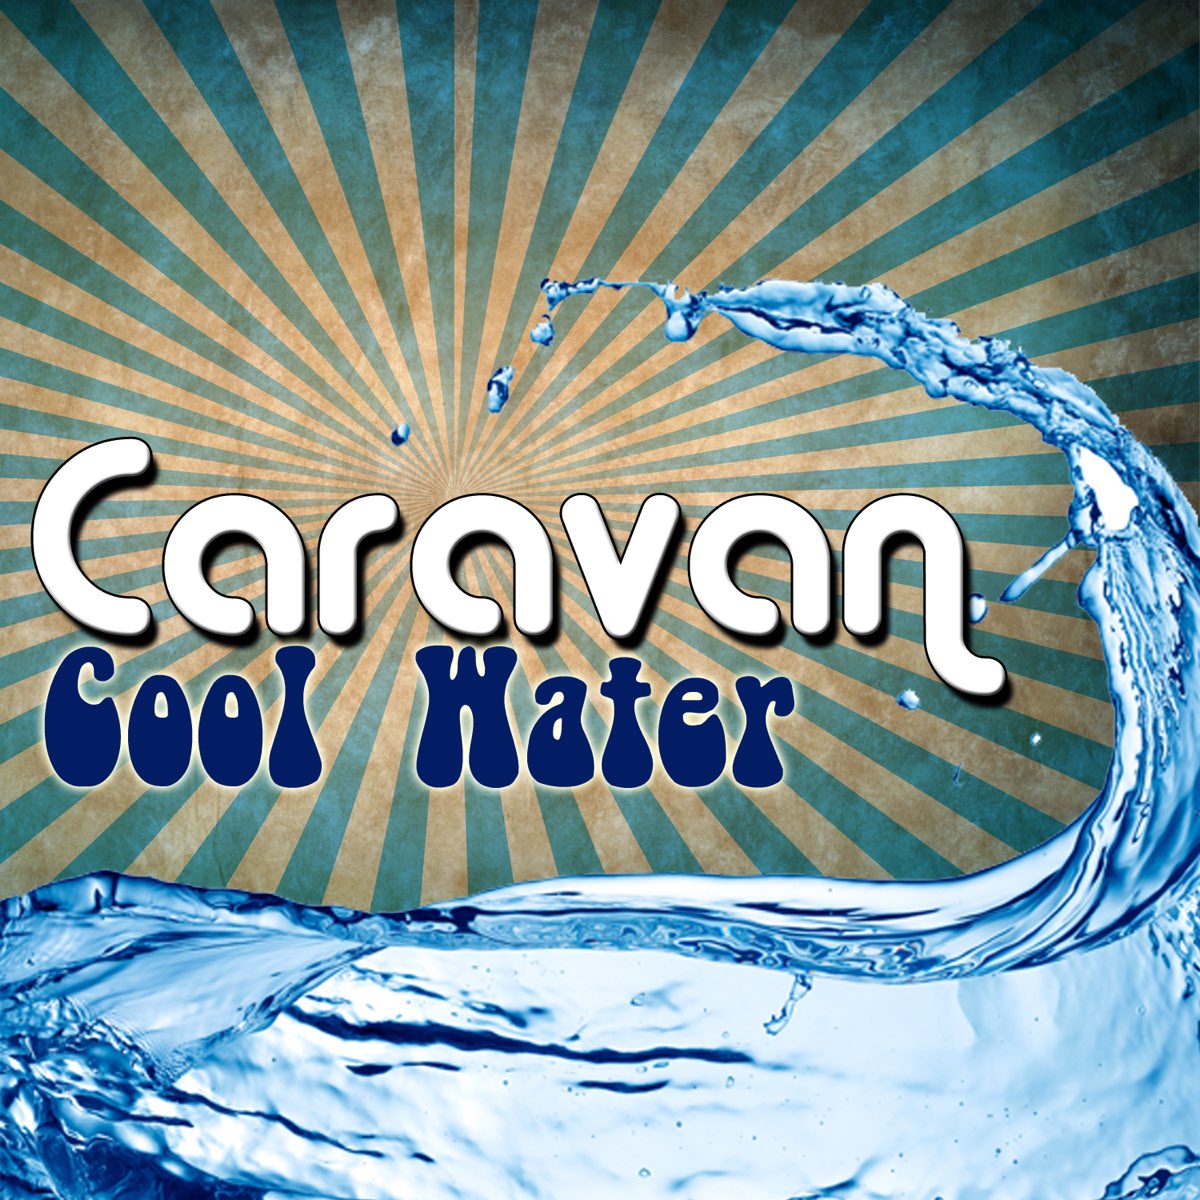 Караван вода. Caravan cool Water 1994. Caravan 1977 - cool Water. Cool Water (Caravan album). Caravan the album.